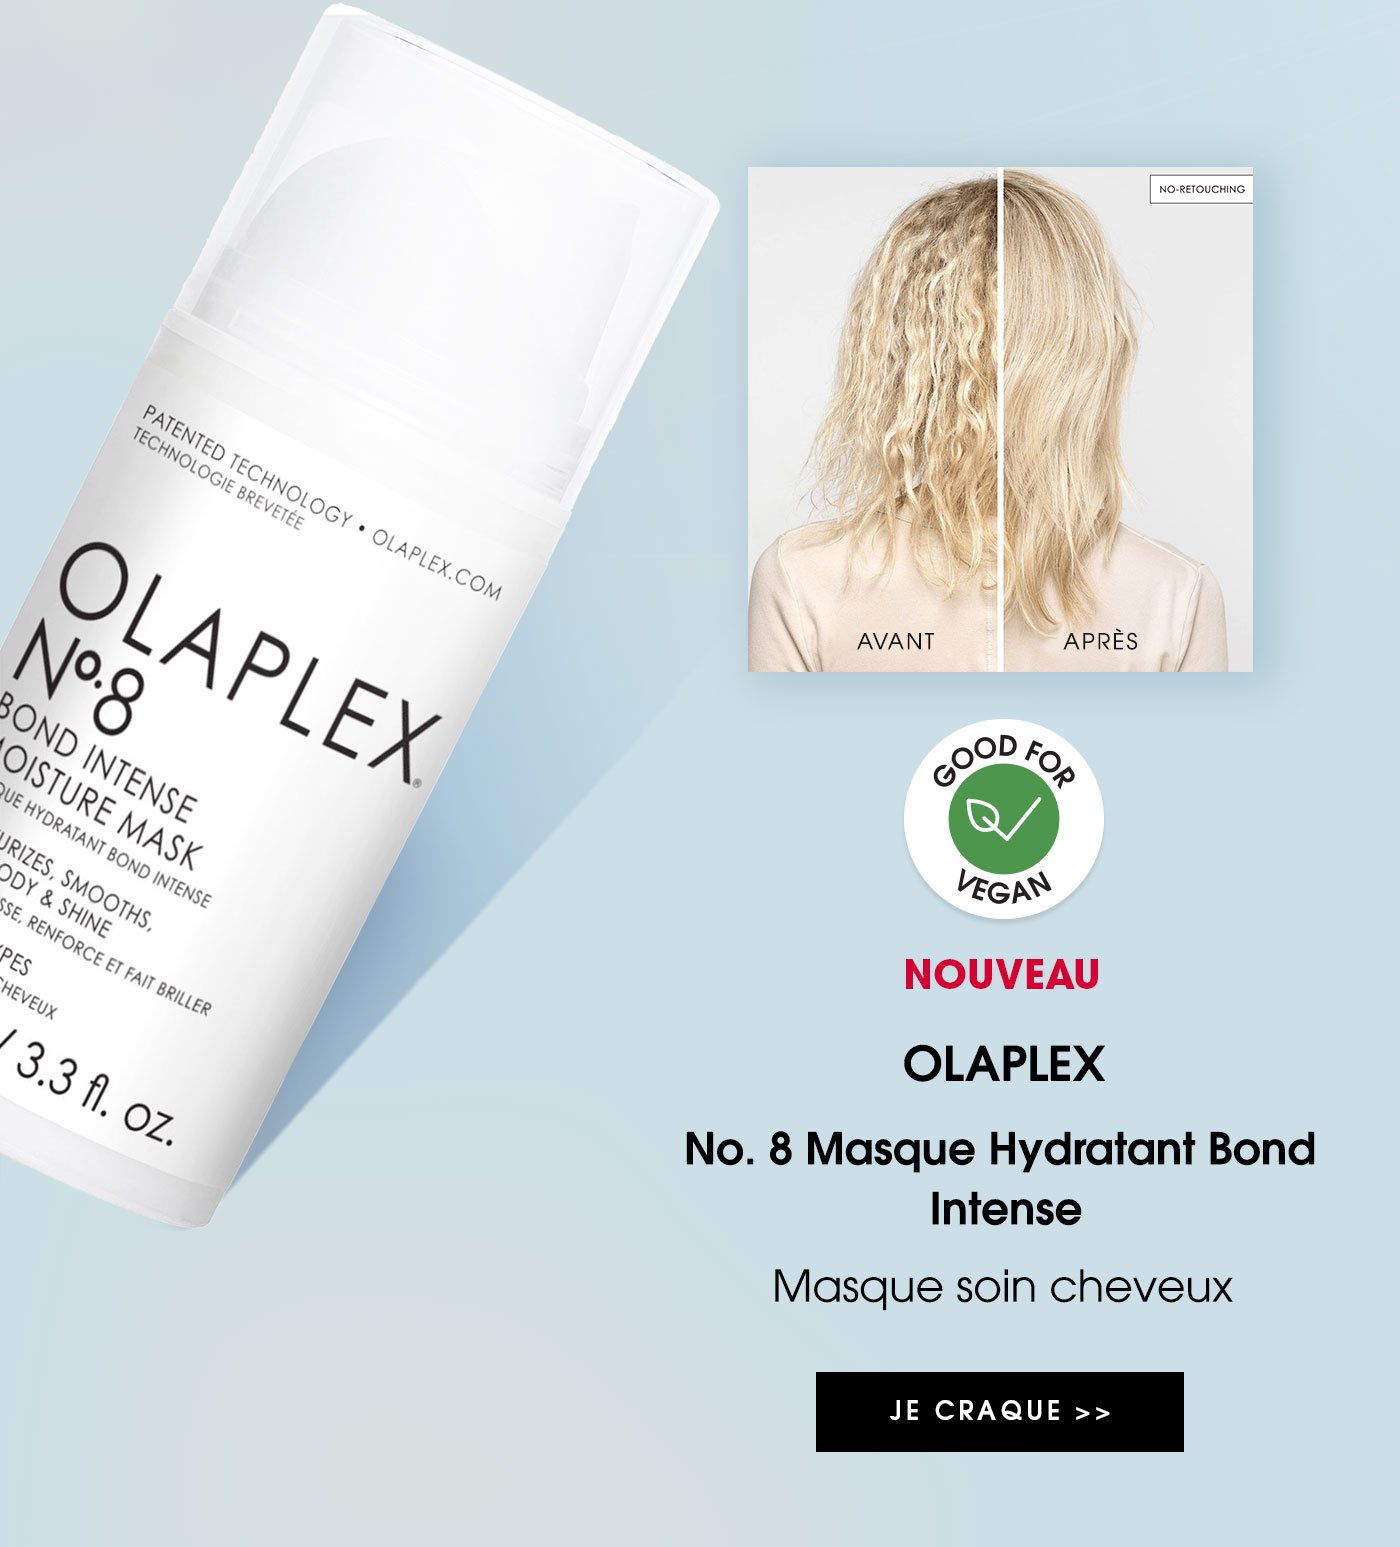 NOUVEAU - OLAPLEX No. 8 Masque Hydratant Bond Intense - Masque soin cheveux | JE CRAQUE >>